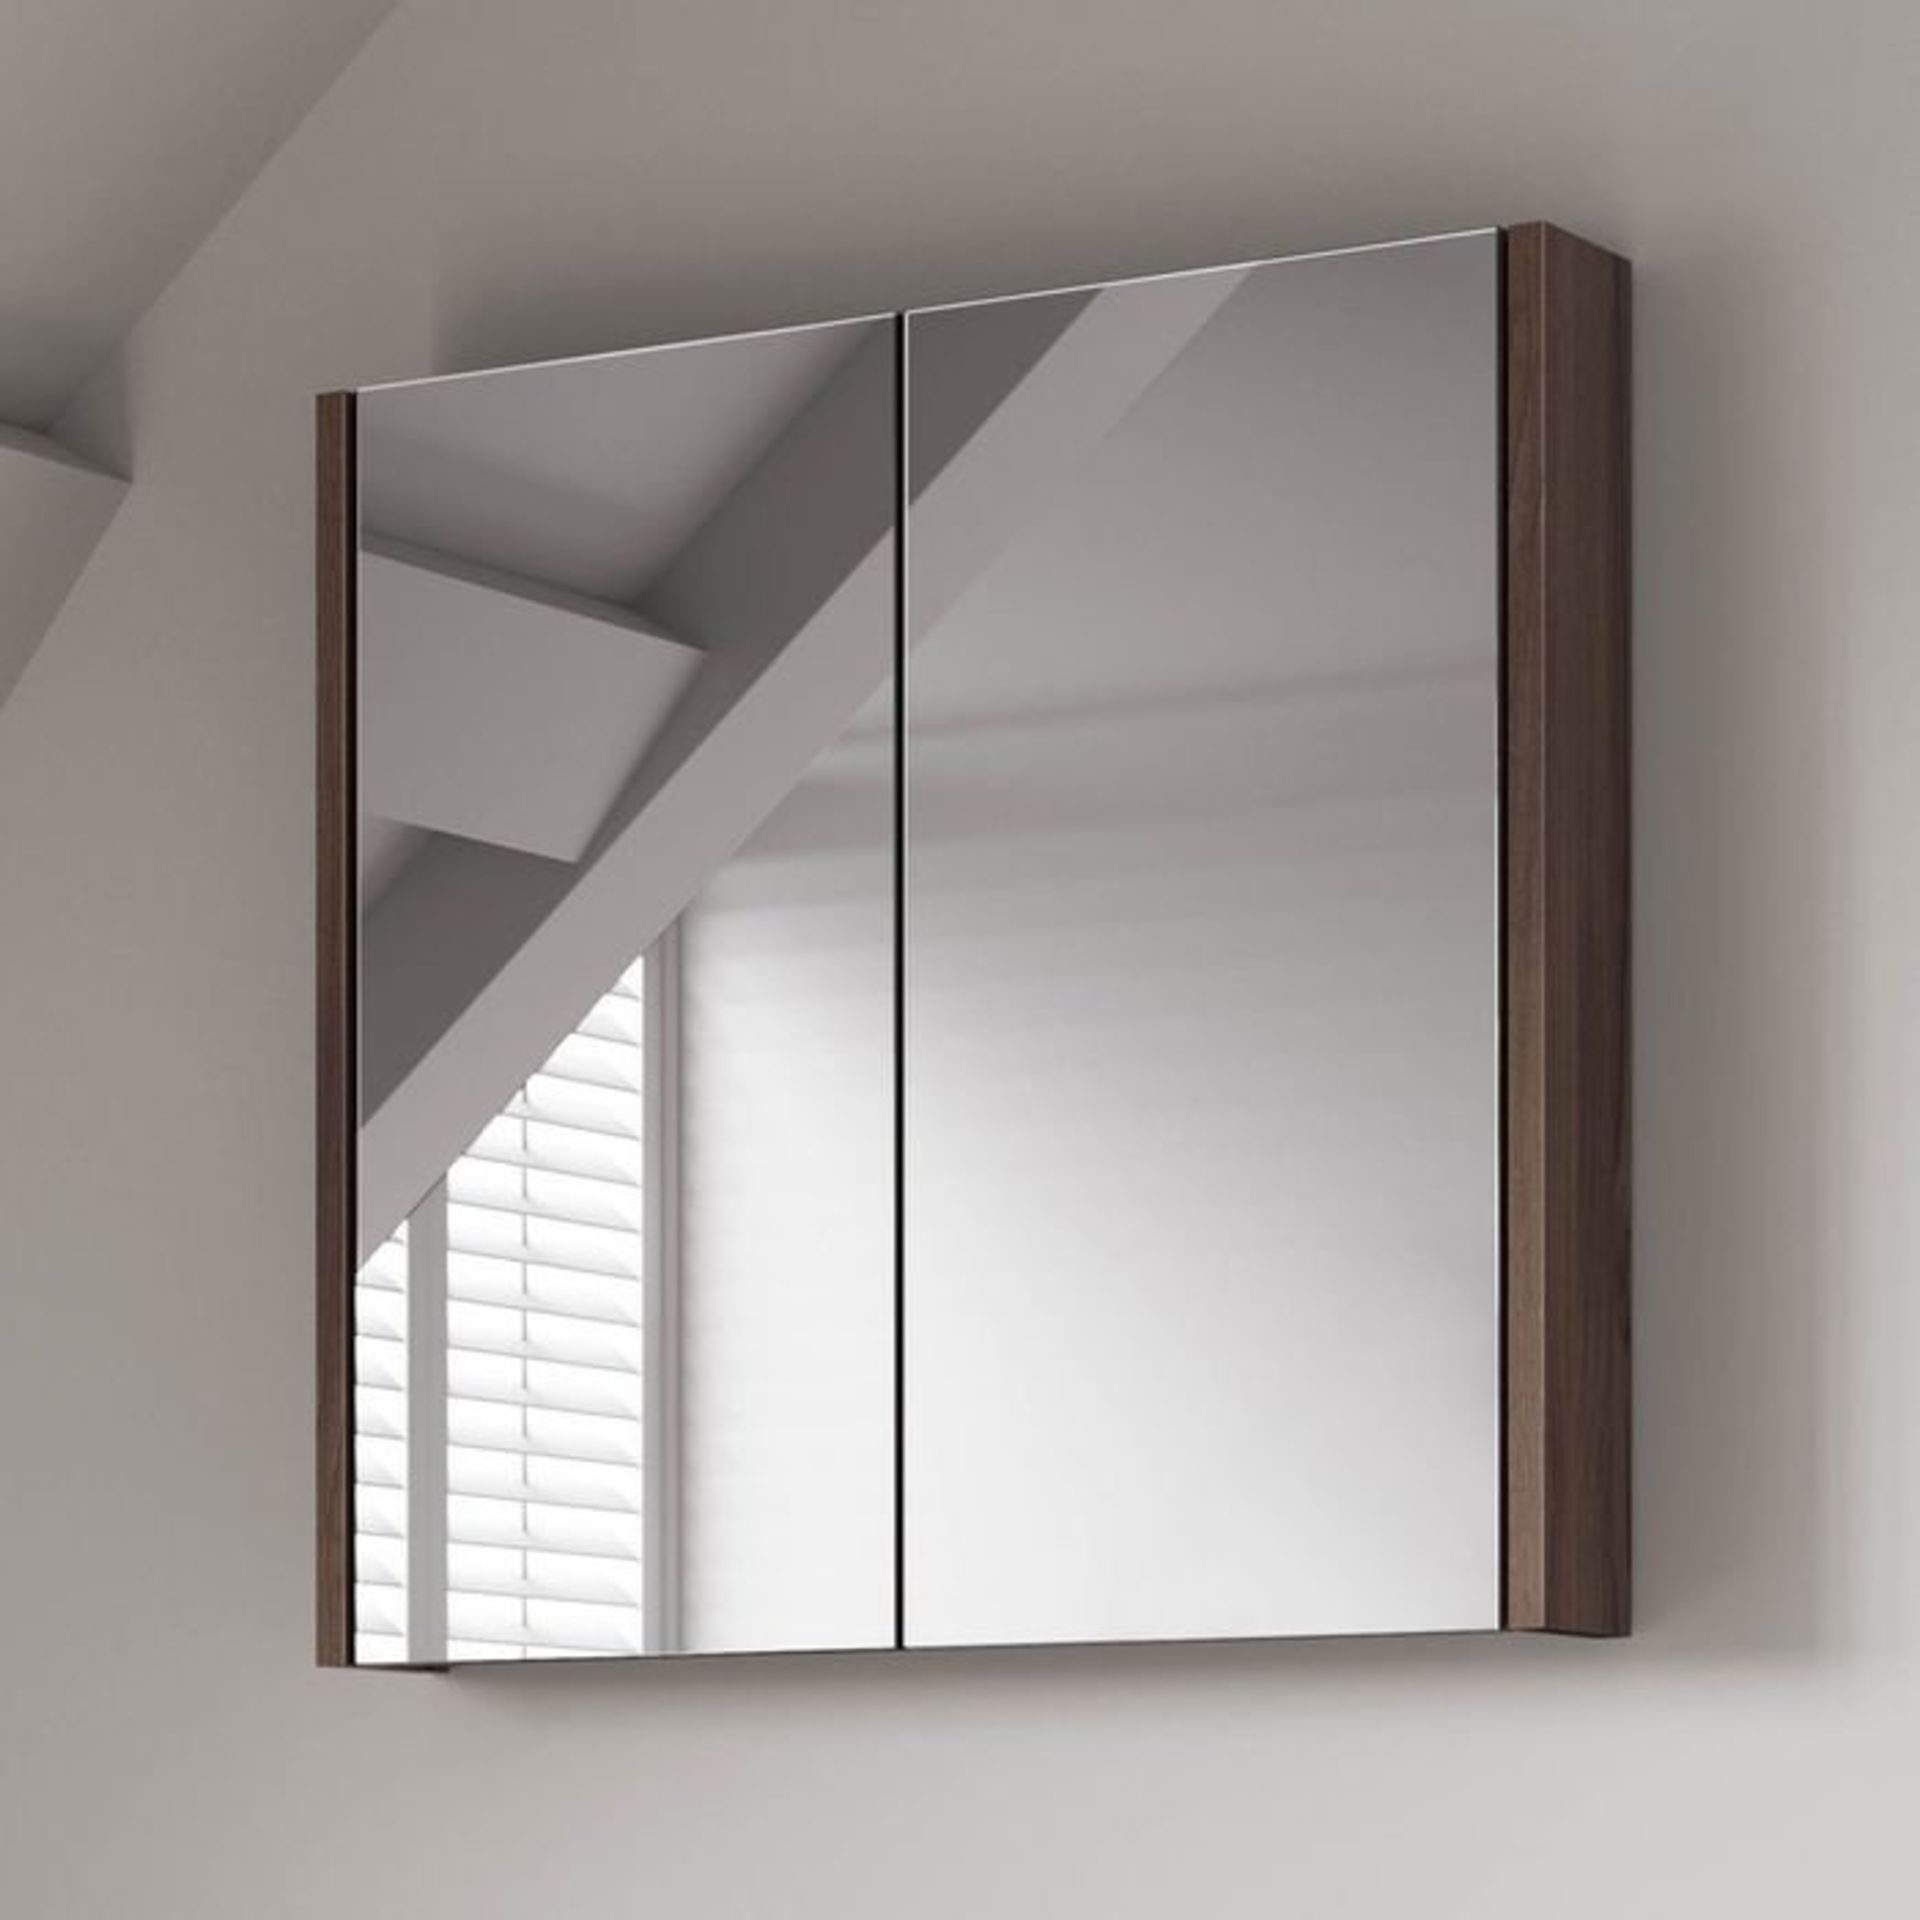 (V154) 600mm Walnut Effect Double Door Mirror Cabinet RRP £174.99 Sleek contemporary design Double